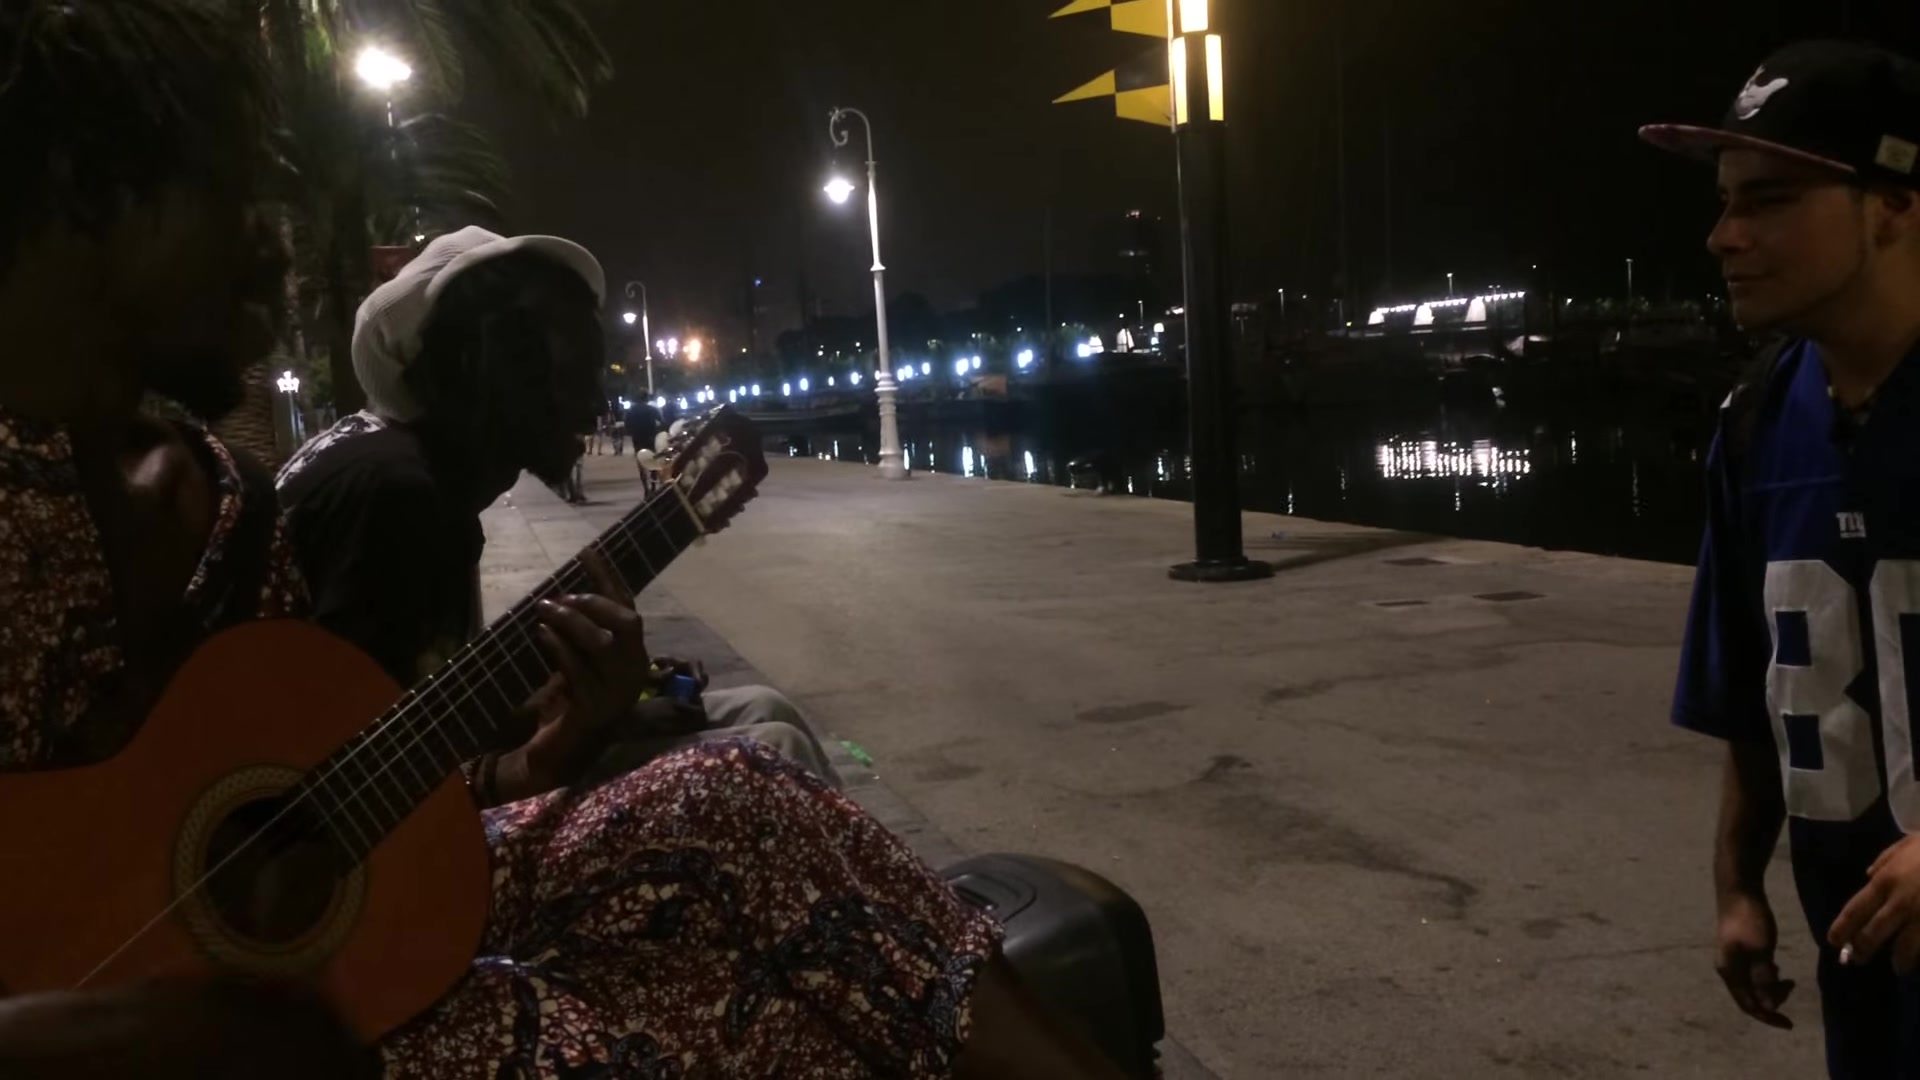 【搬运】一个说唱歌手和几个牙买加雷鬼爱好者在巴塞罗那街头相遇擦出的火花